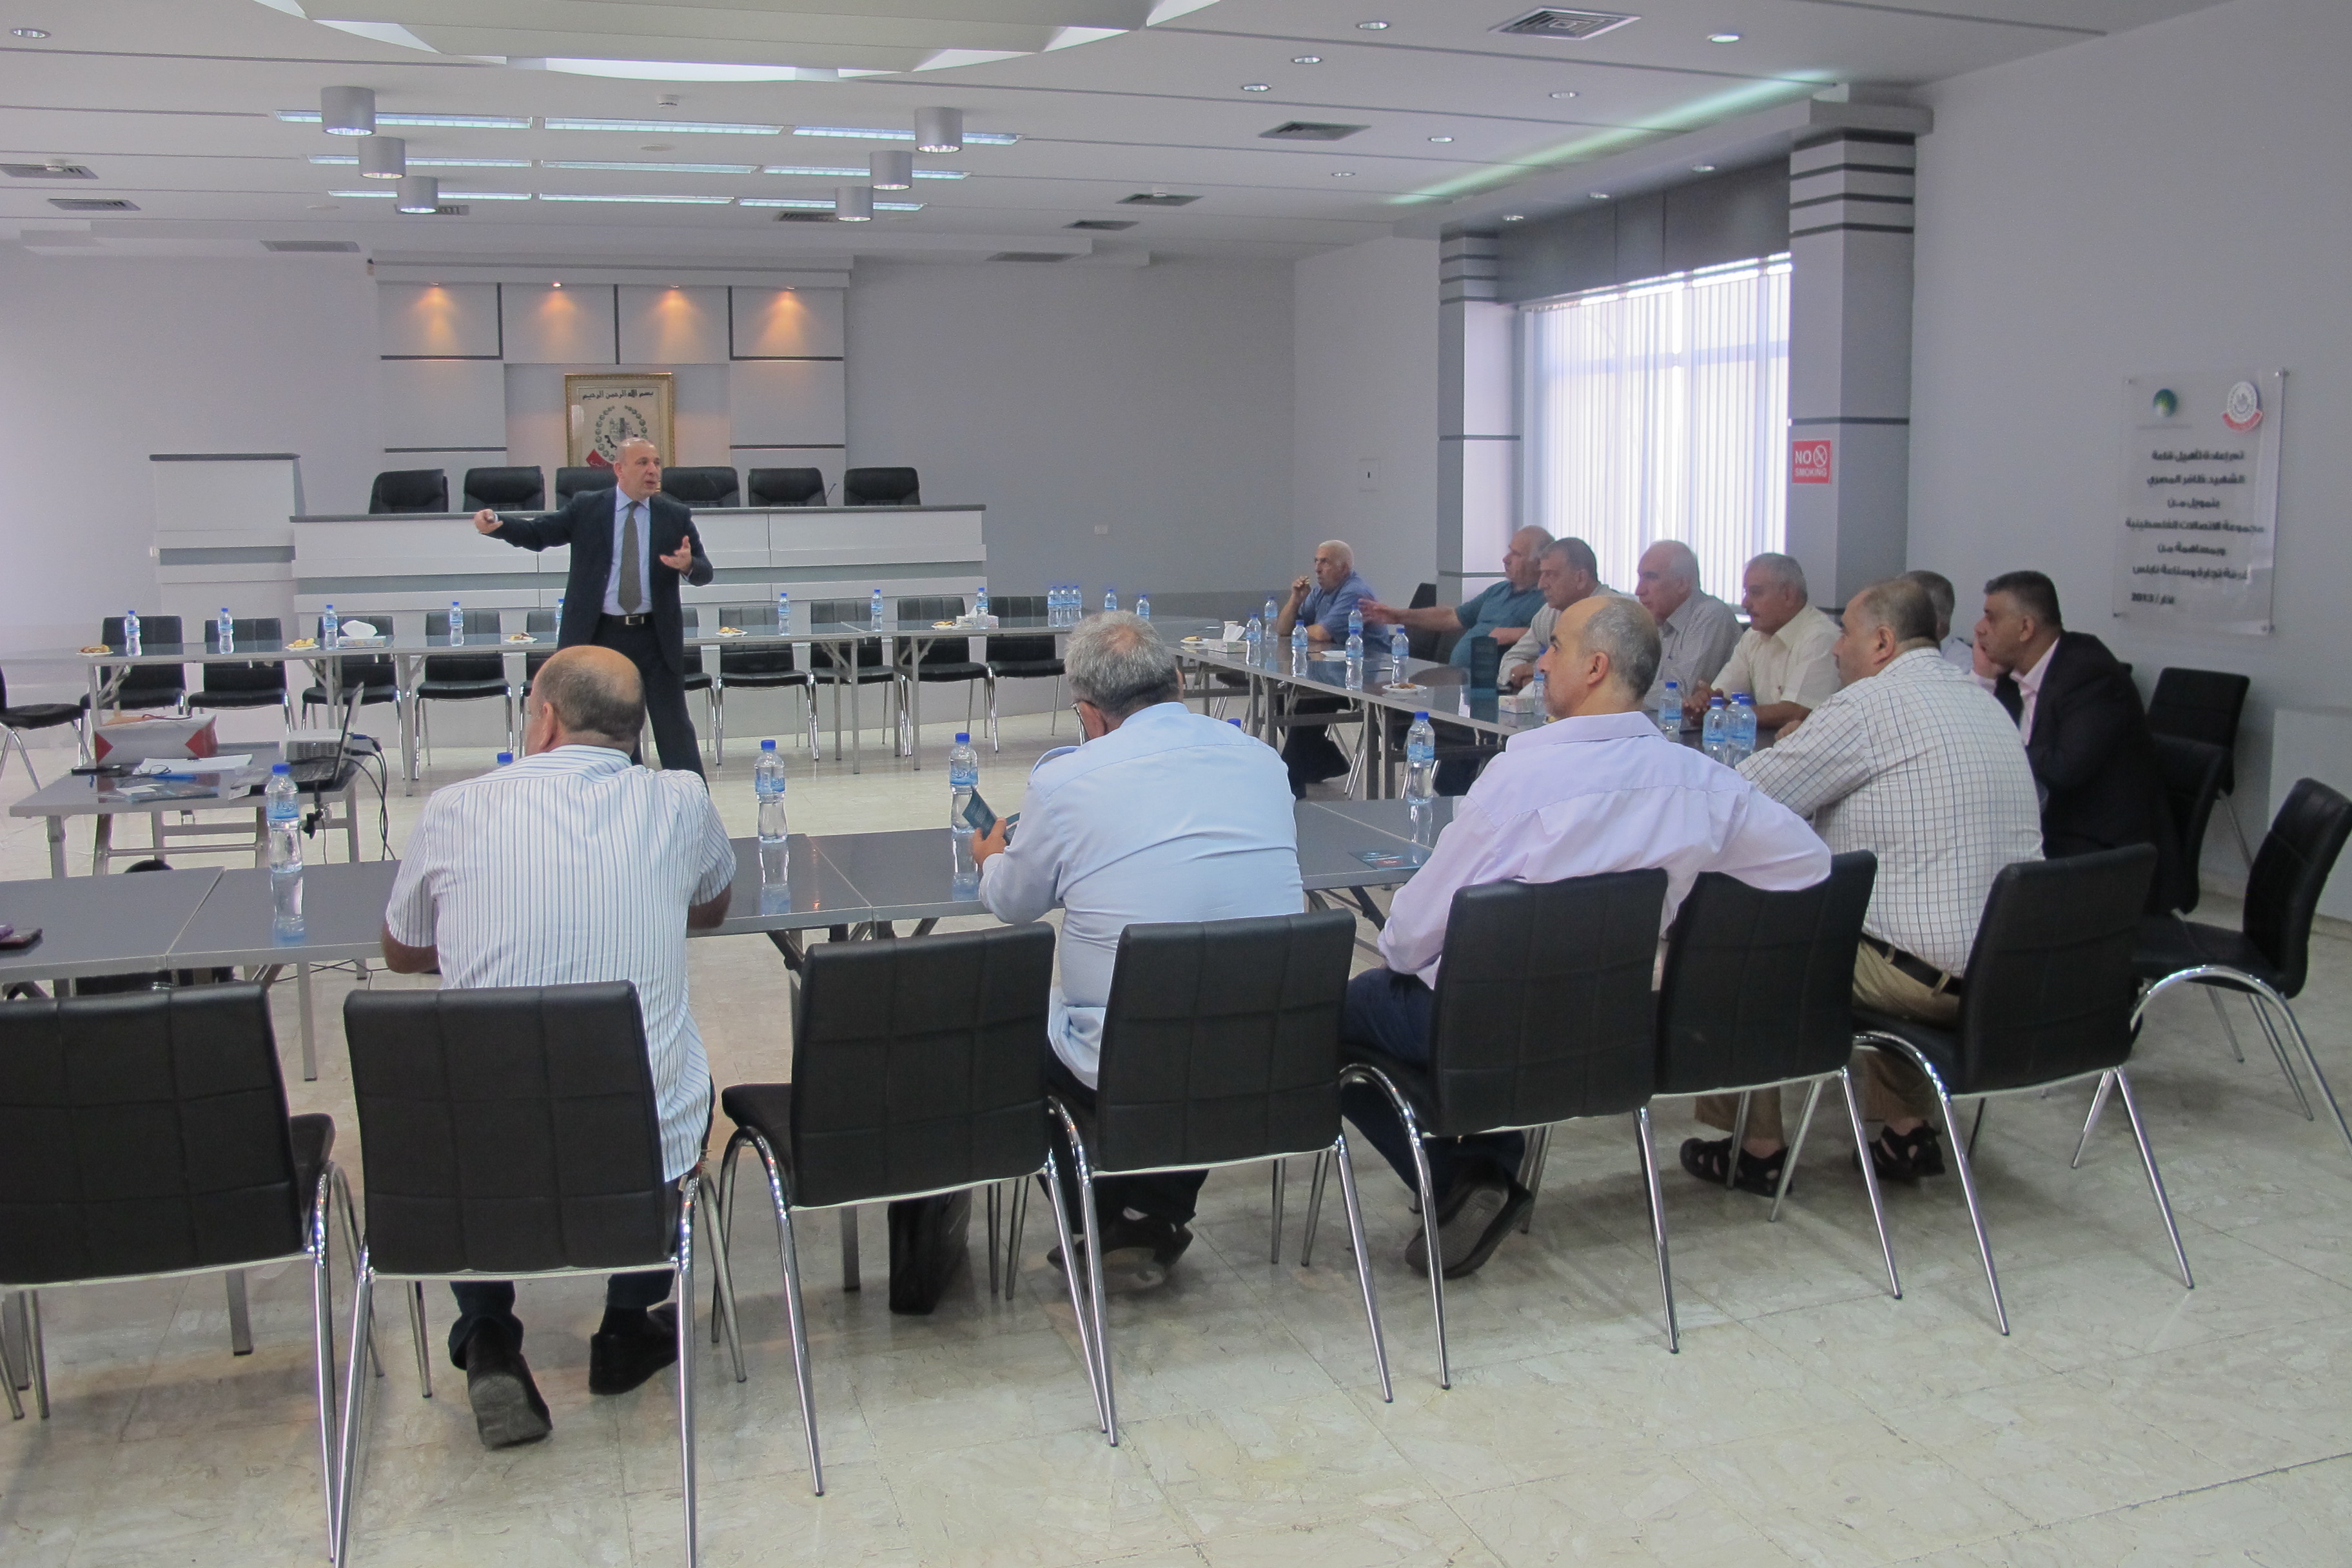 لقاء تعريفي بالمؤسسة الفلسطينية لضمان الودائع يعقد في غرفة تجارة نابلس 22/9/2014 